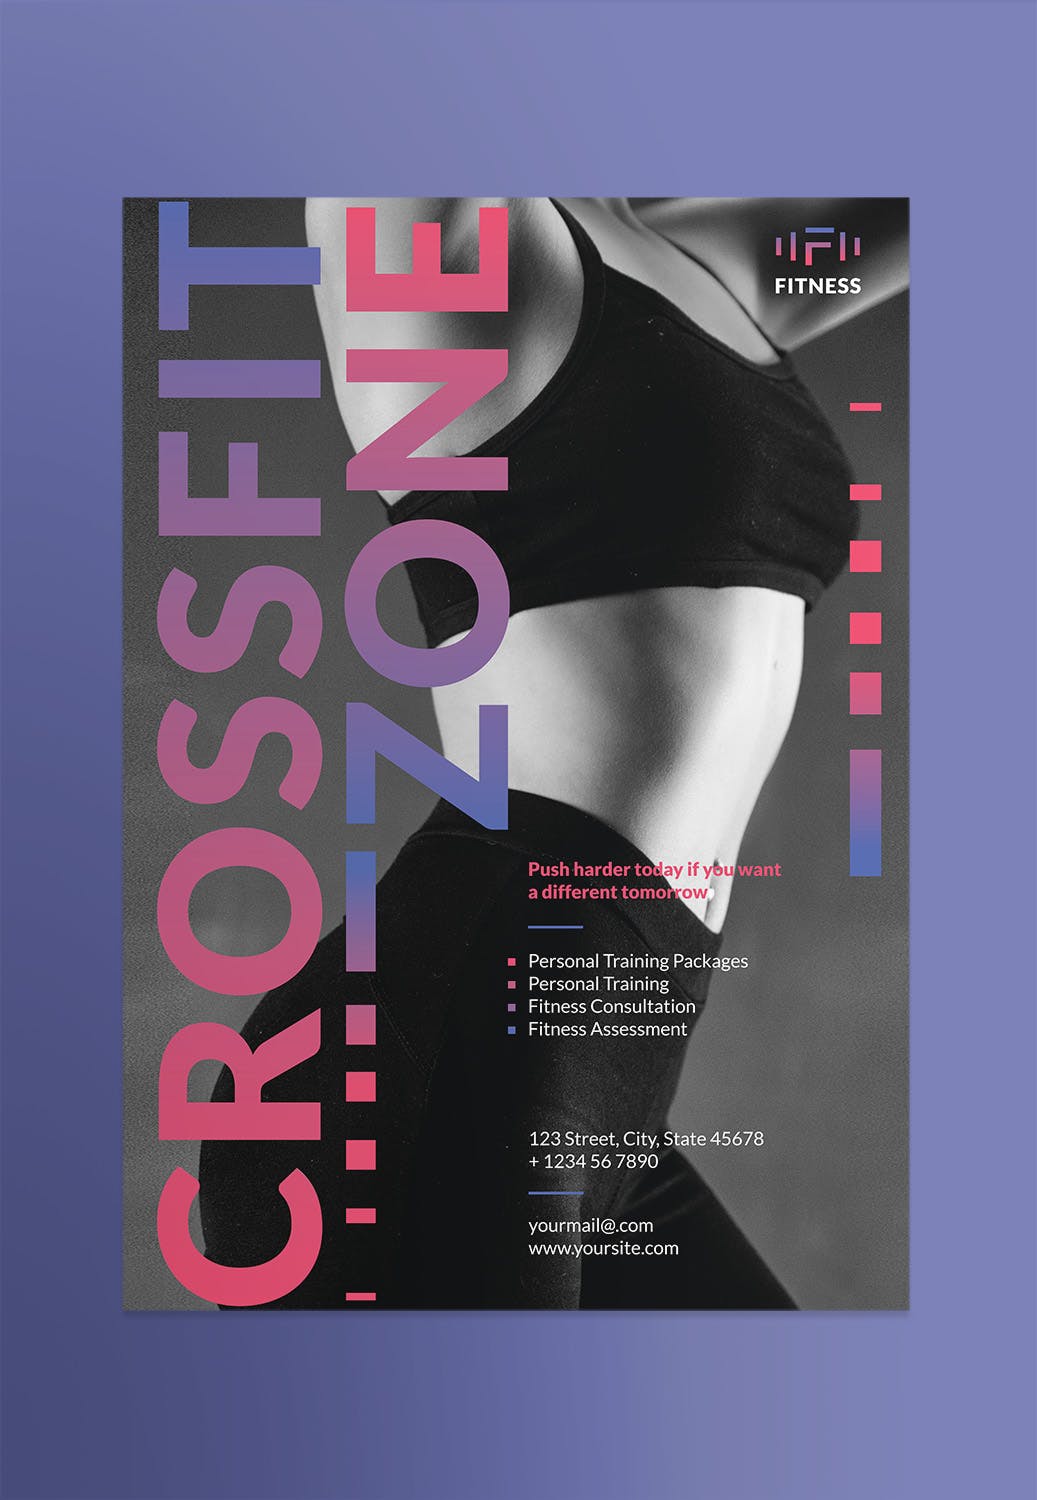 健身俱乐部/健身私教海报设计模板 Fitness Studio Poster插图(1)